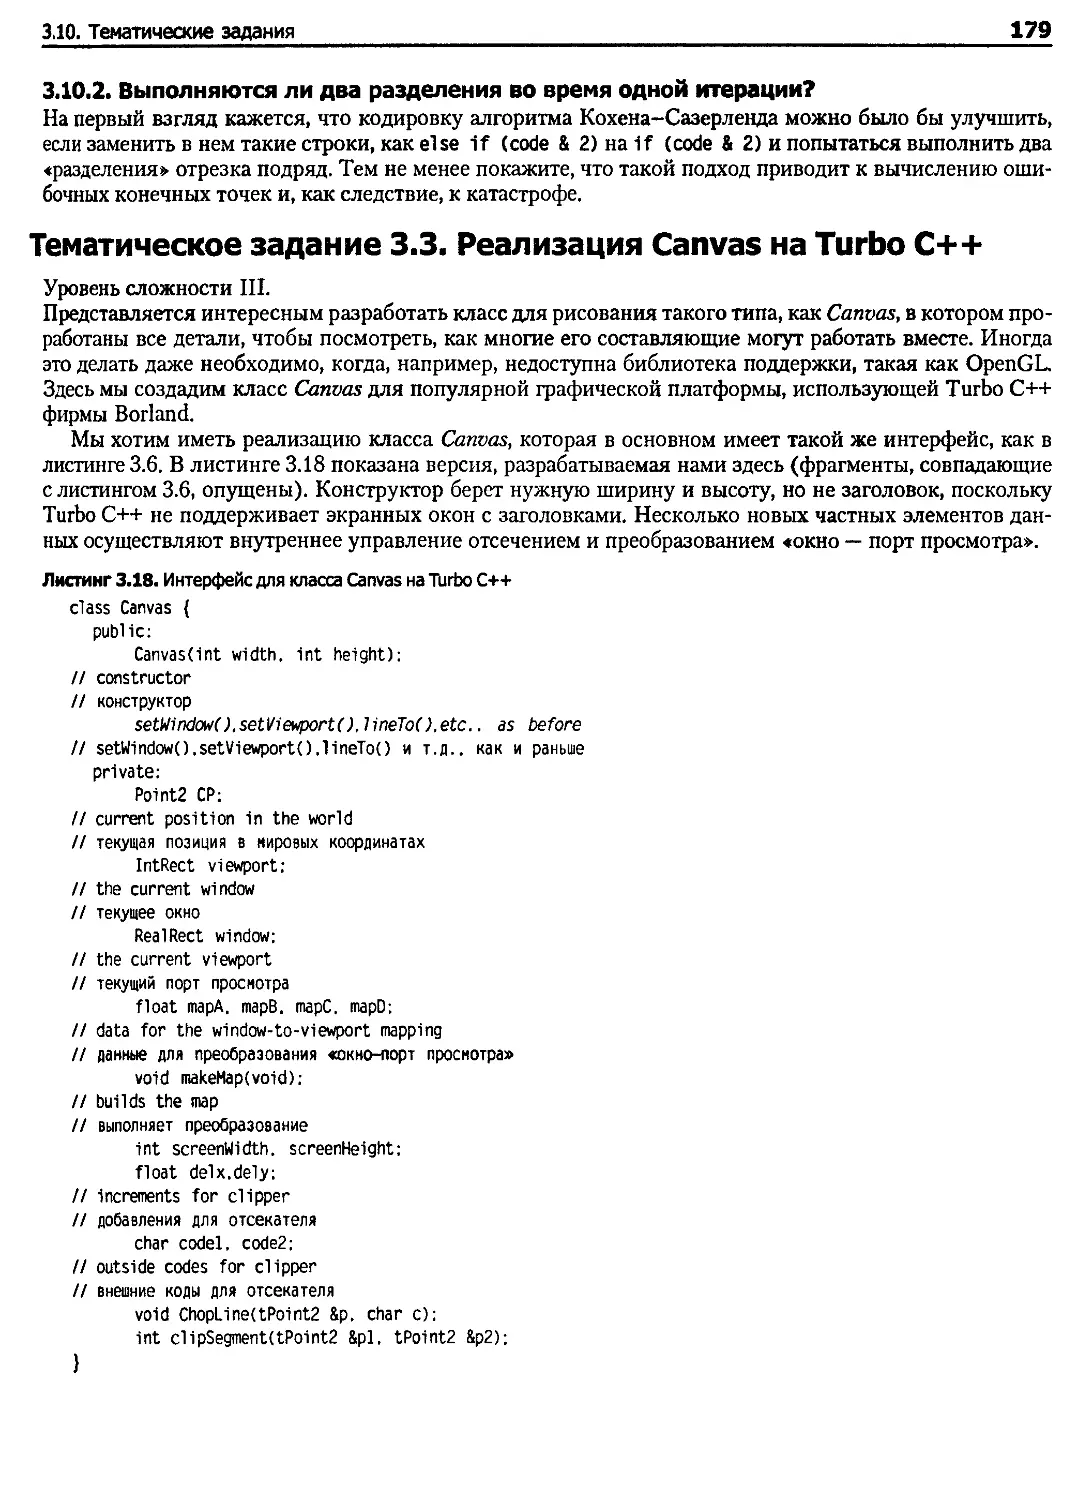 Тематическое задание 3.3. Реализация Canvas на Turbo C++